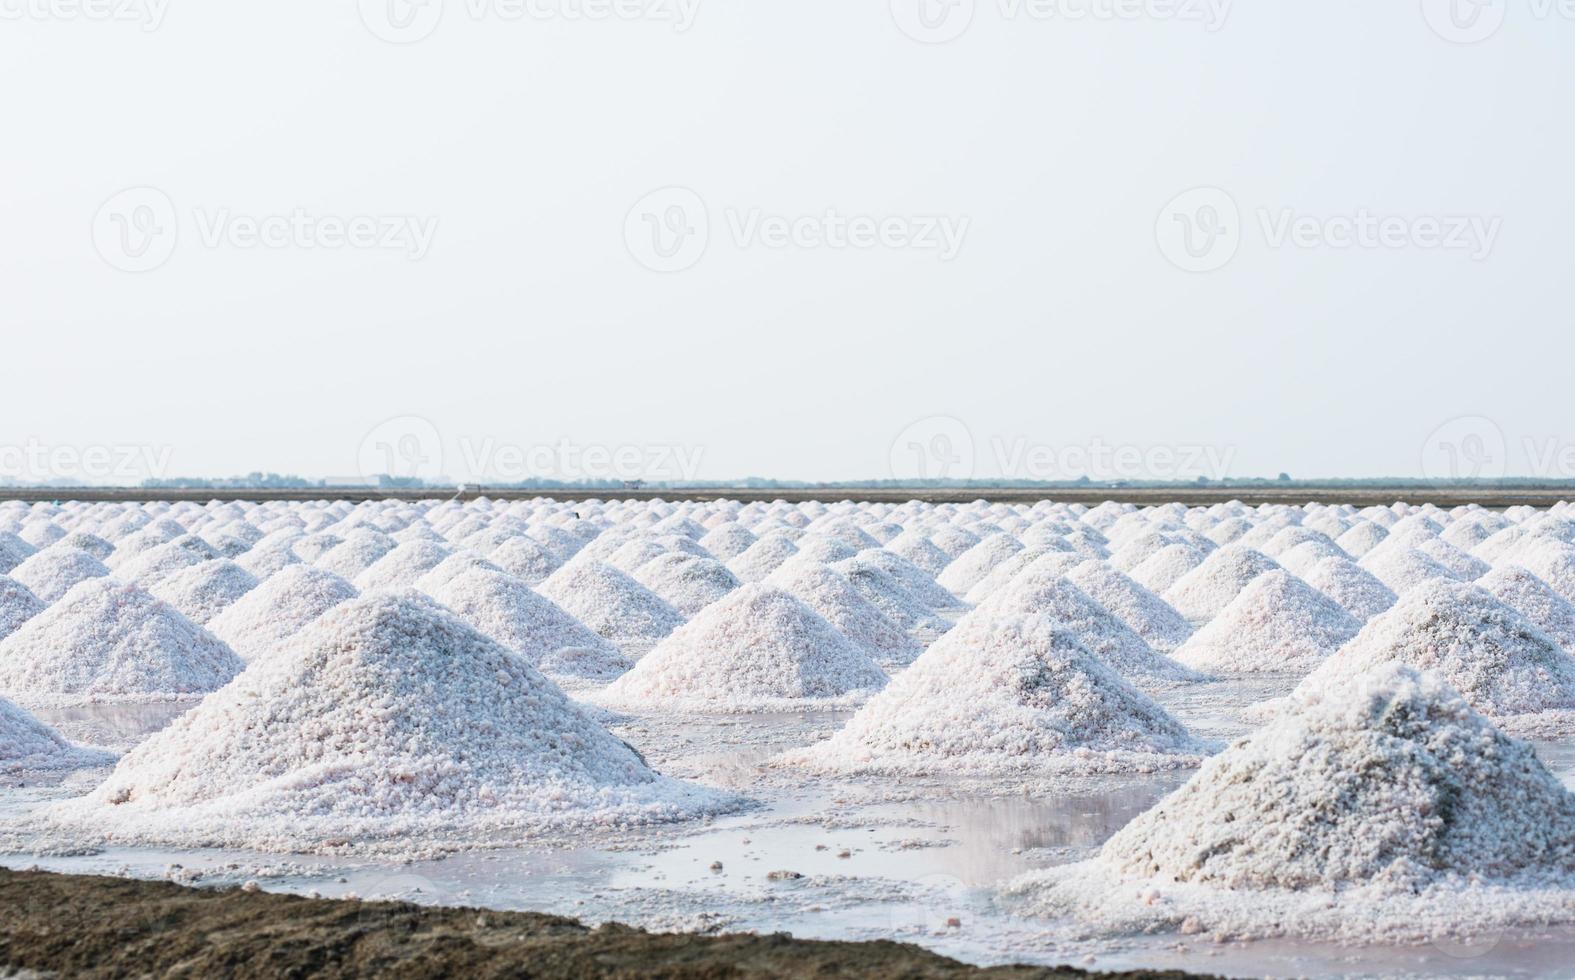 masse de sel dans la ferme salée de la mer salée photo